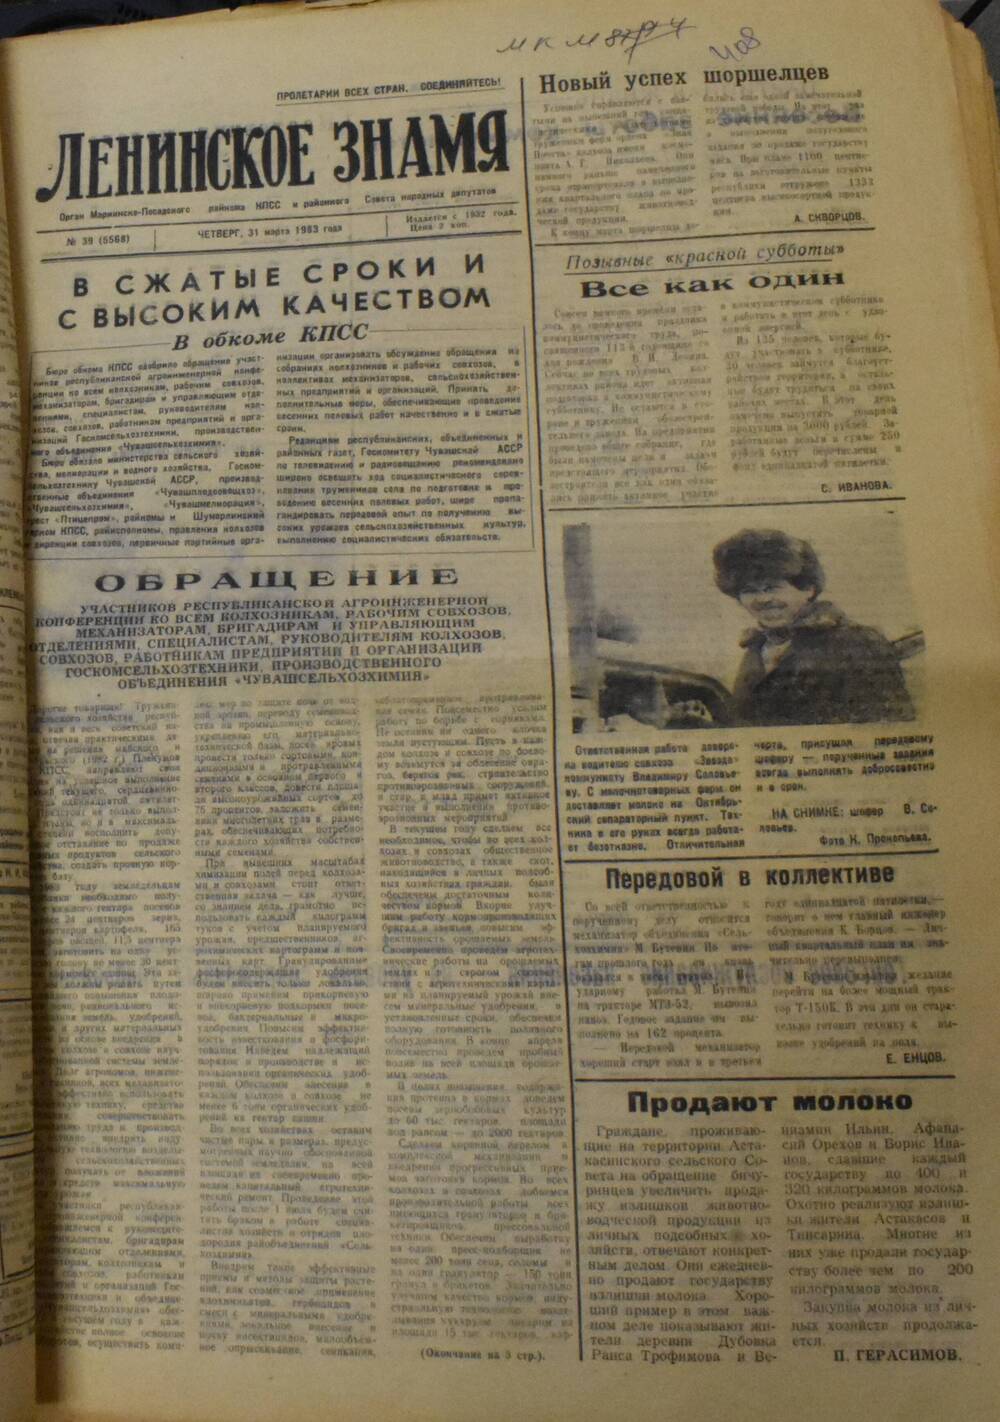 Газета Ленинское знамя № 39 от 31 марта 1983